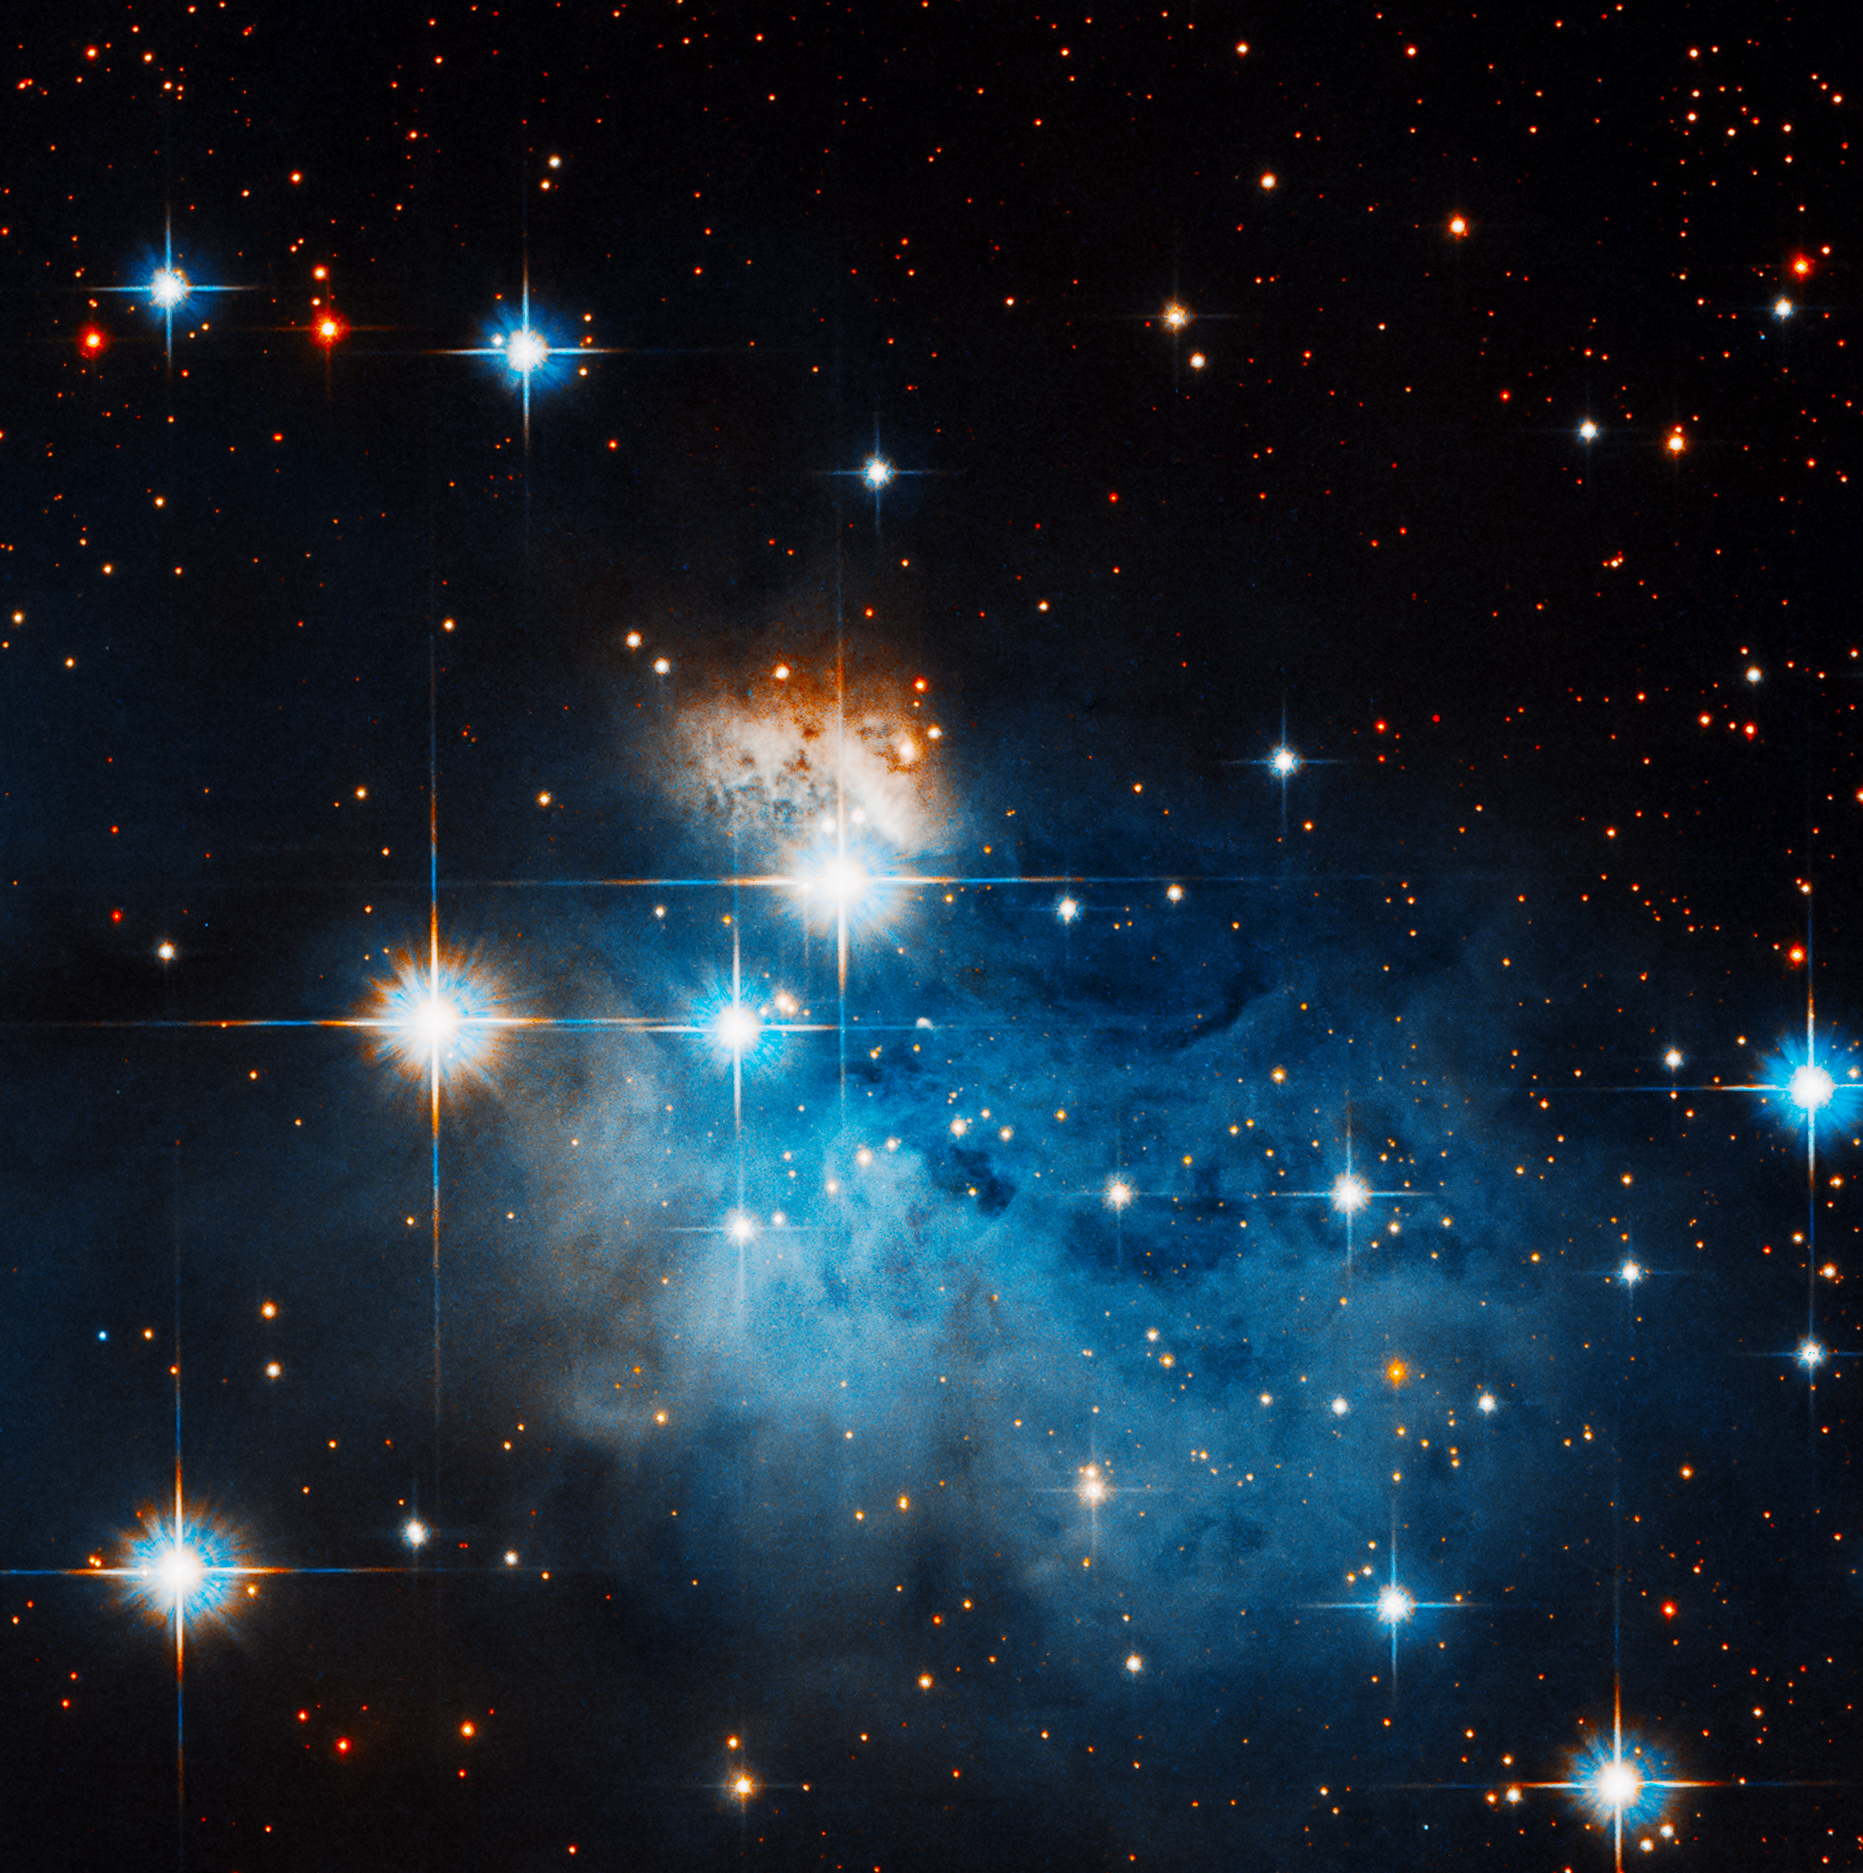 The Coalsack Nebula